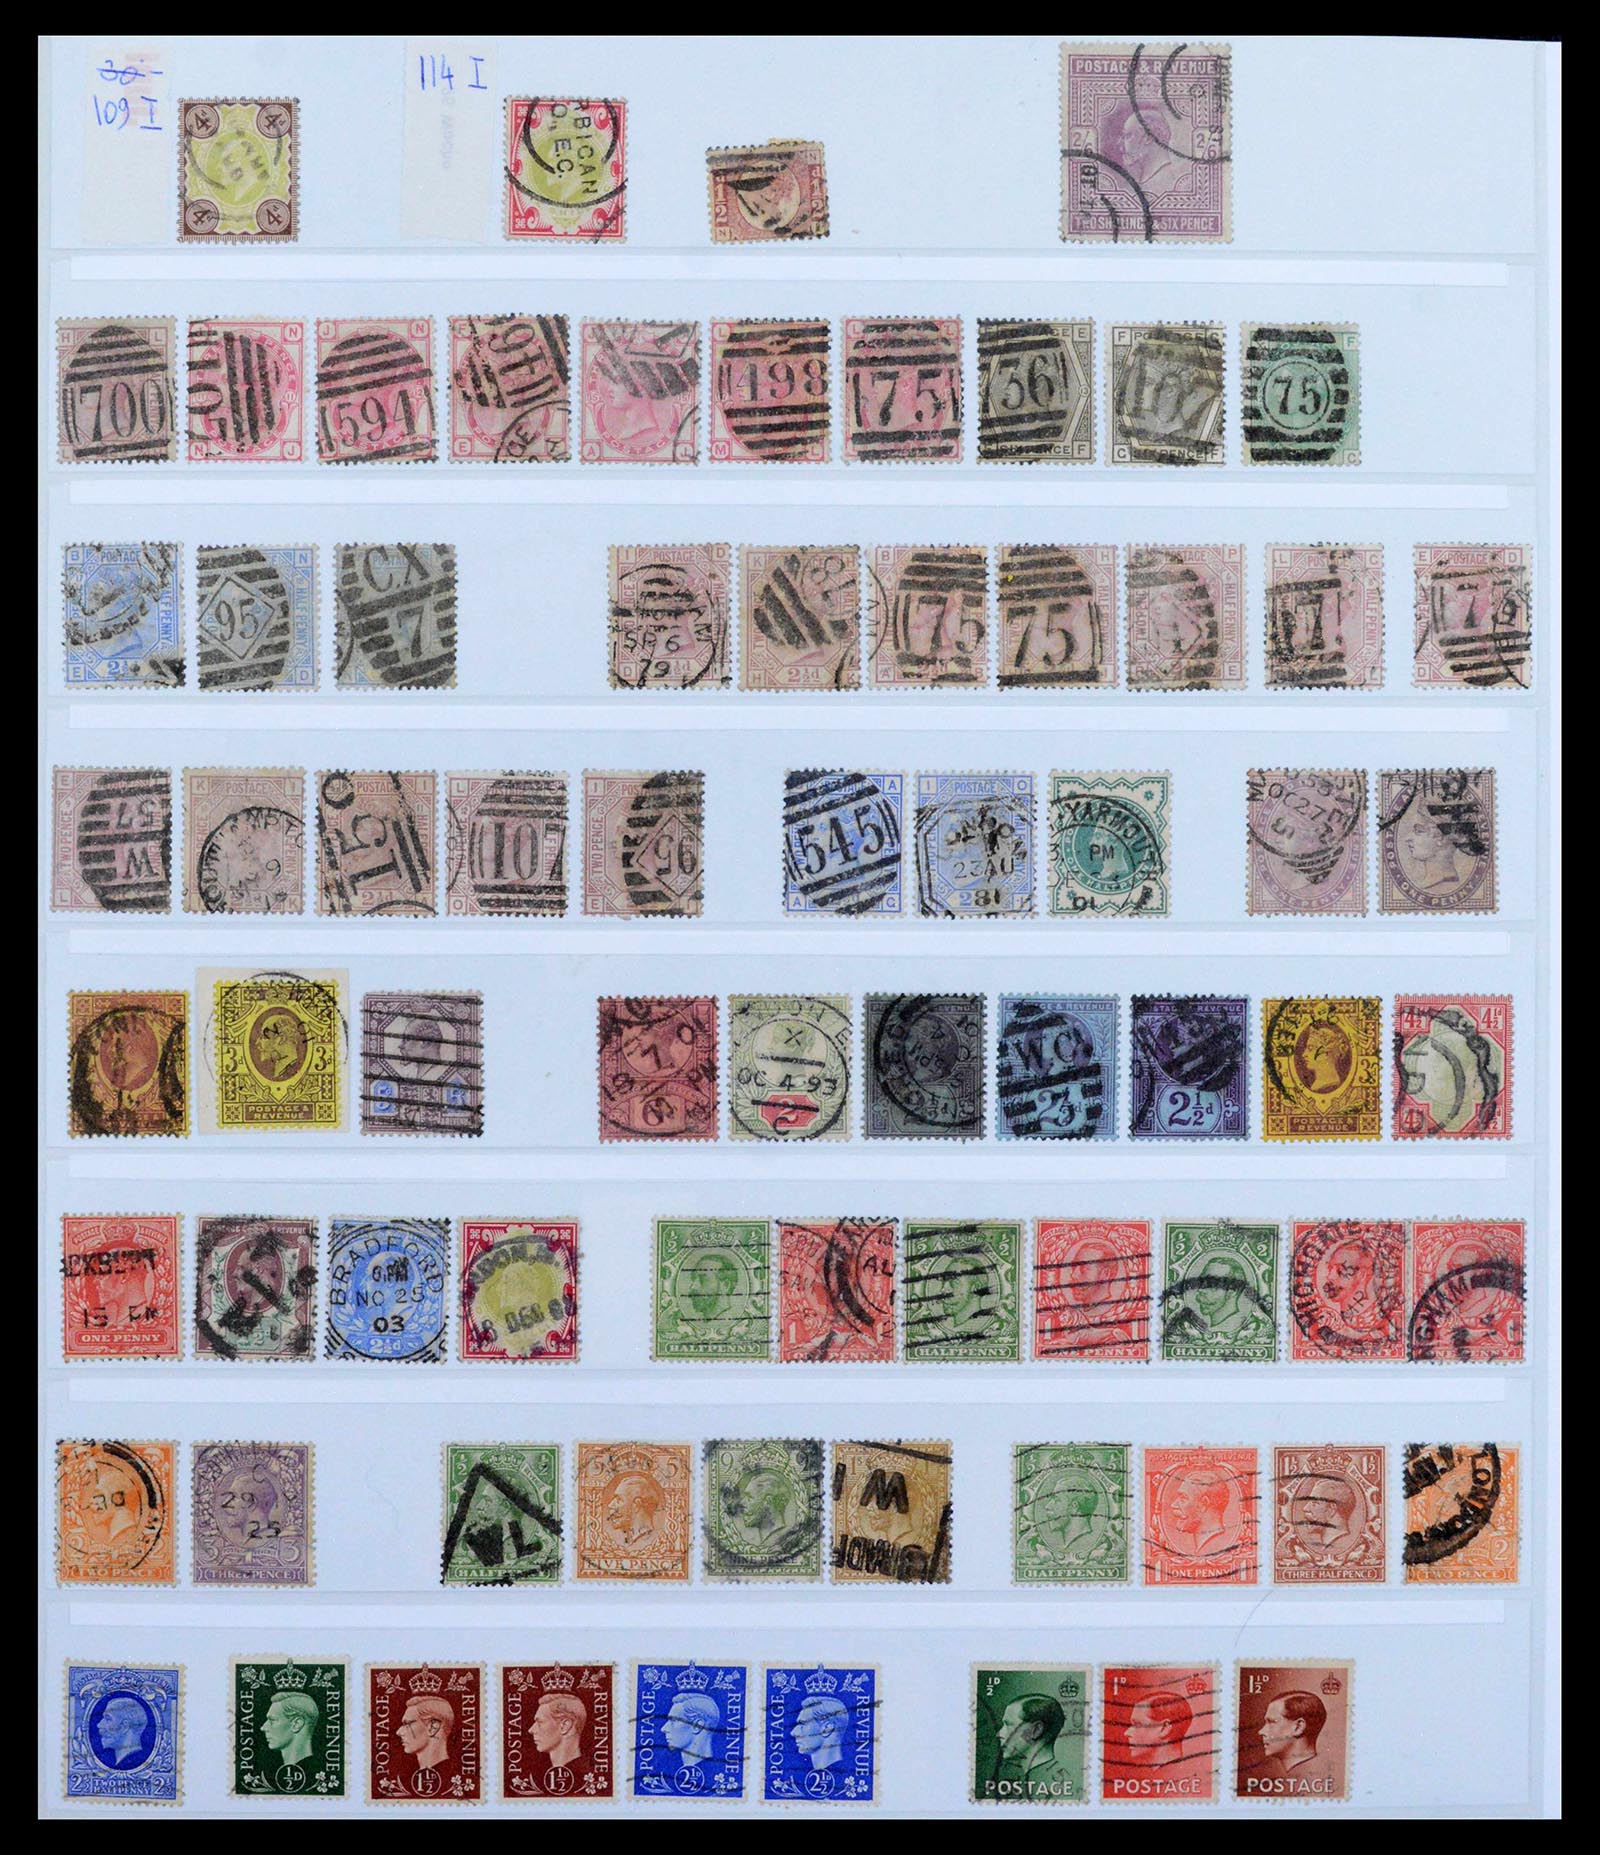 39375 0051 - Postzegelverzameling 39375 Engeland topverzameling 1840-1980.